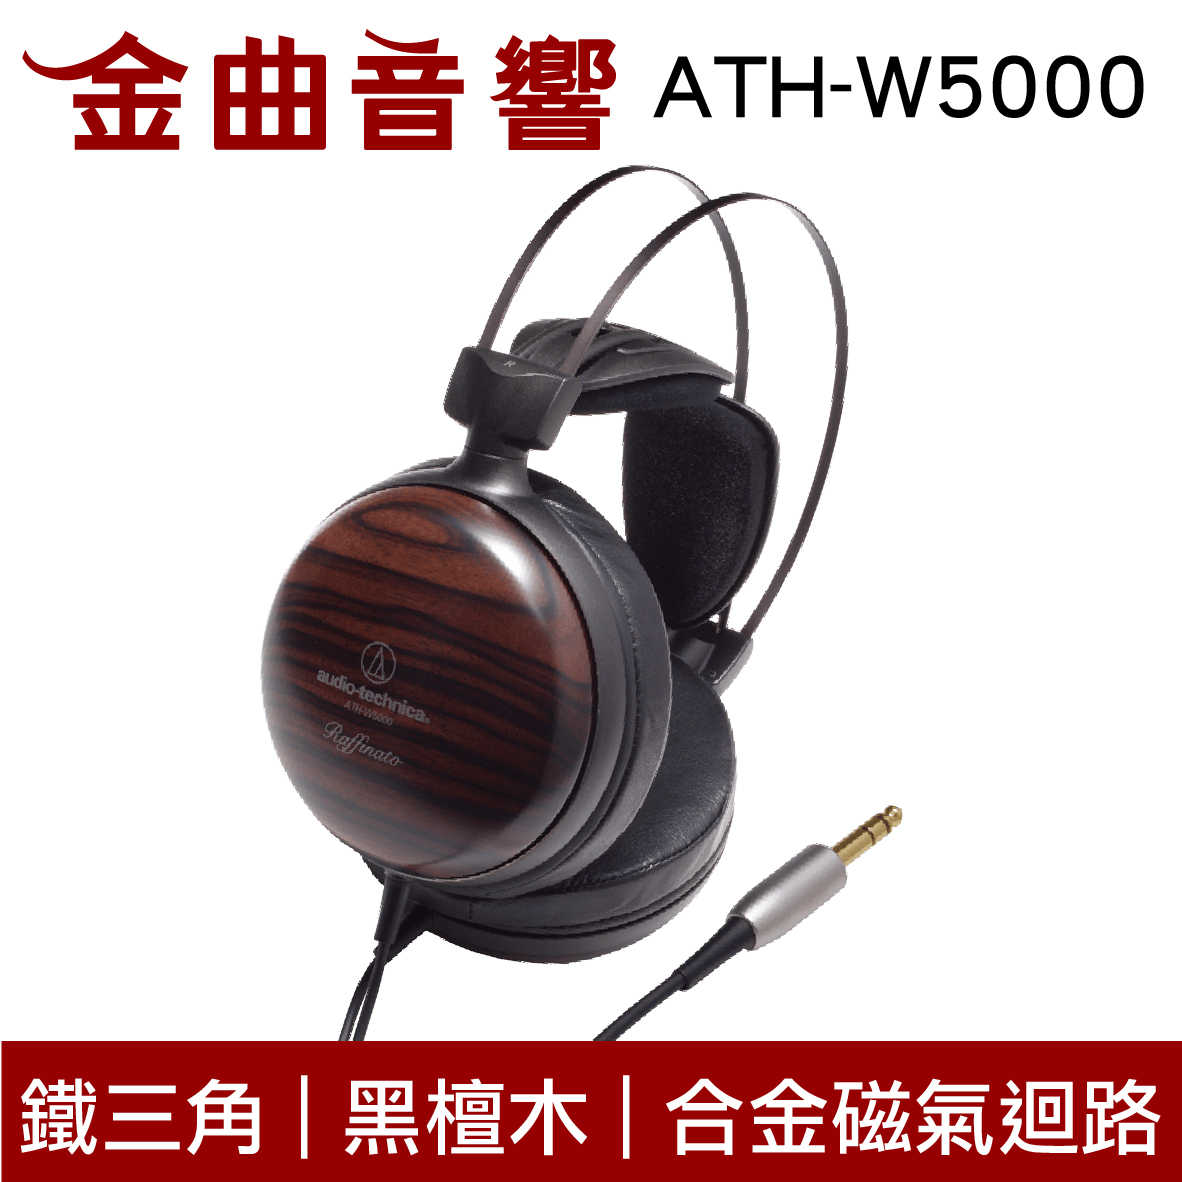 【福利機】鐵三角 ATH-W5000 黑檀木機殼 小羊皮耳墊 封閉式 耳罩式耳機 | 金曲音響